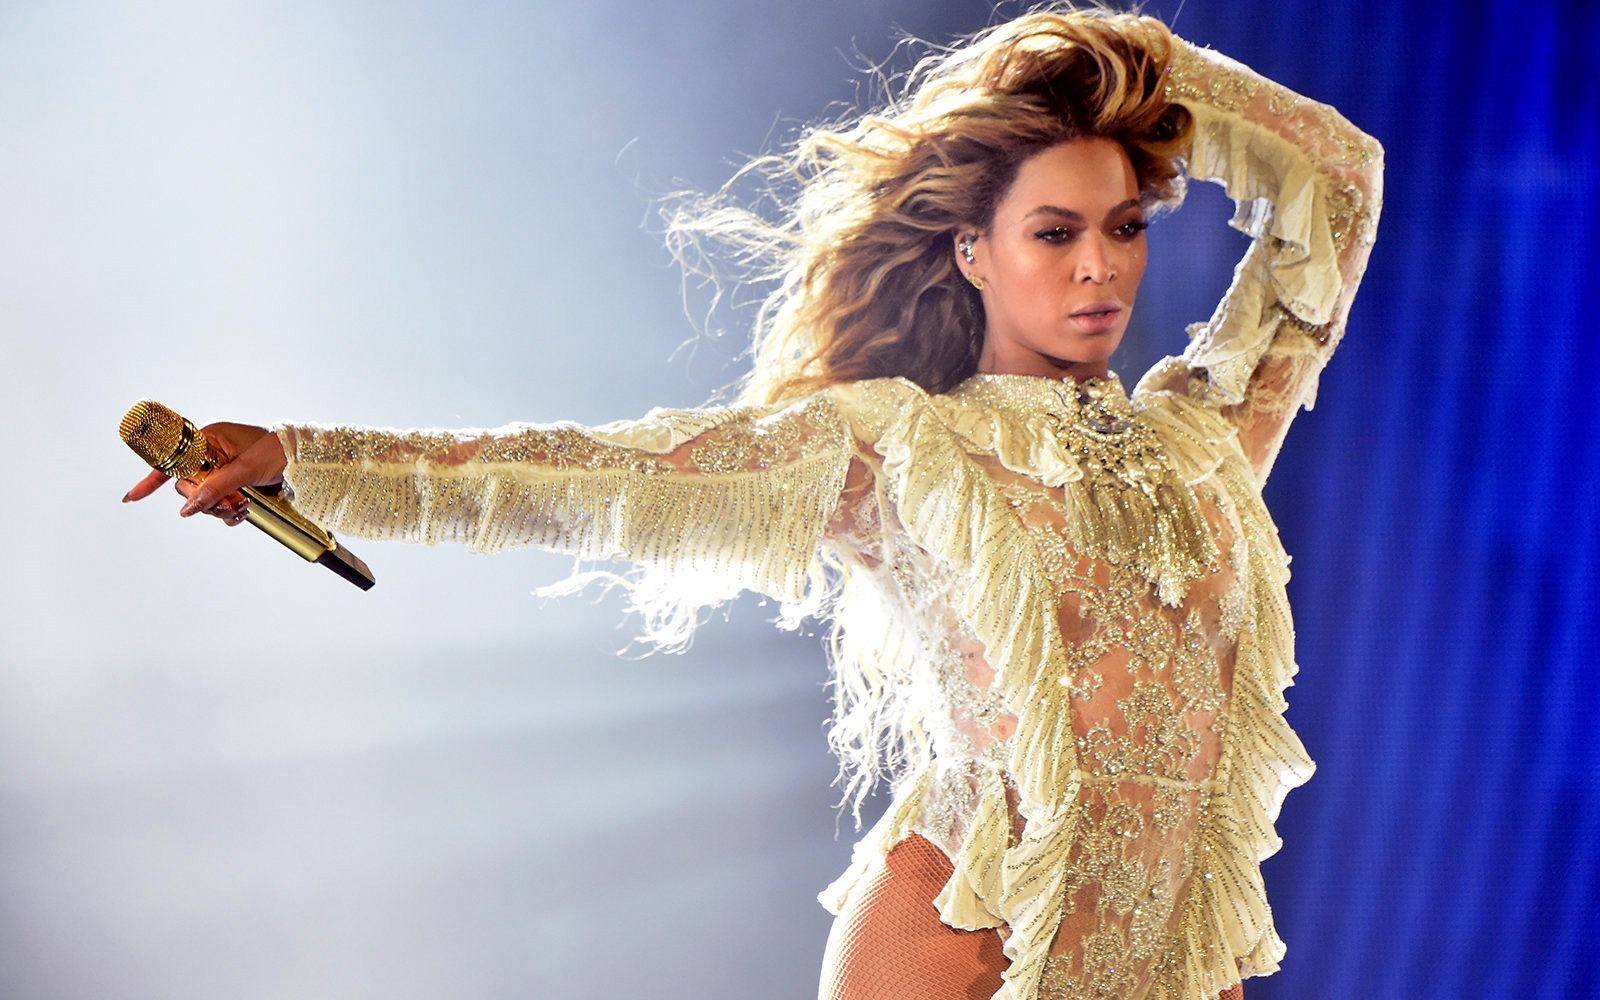 Beyoncé dopo il Louvre vuole girare un video al Colosseo